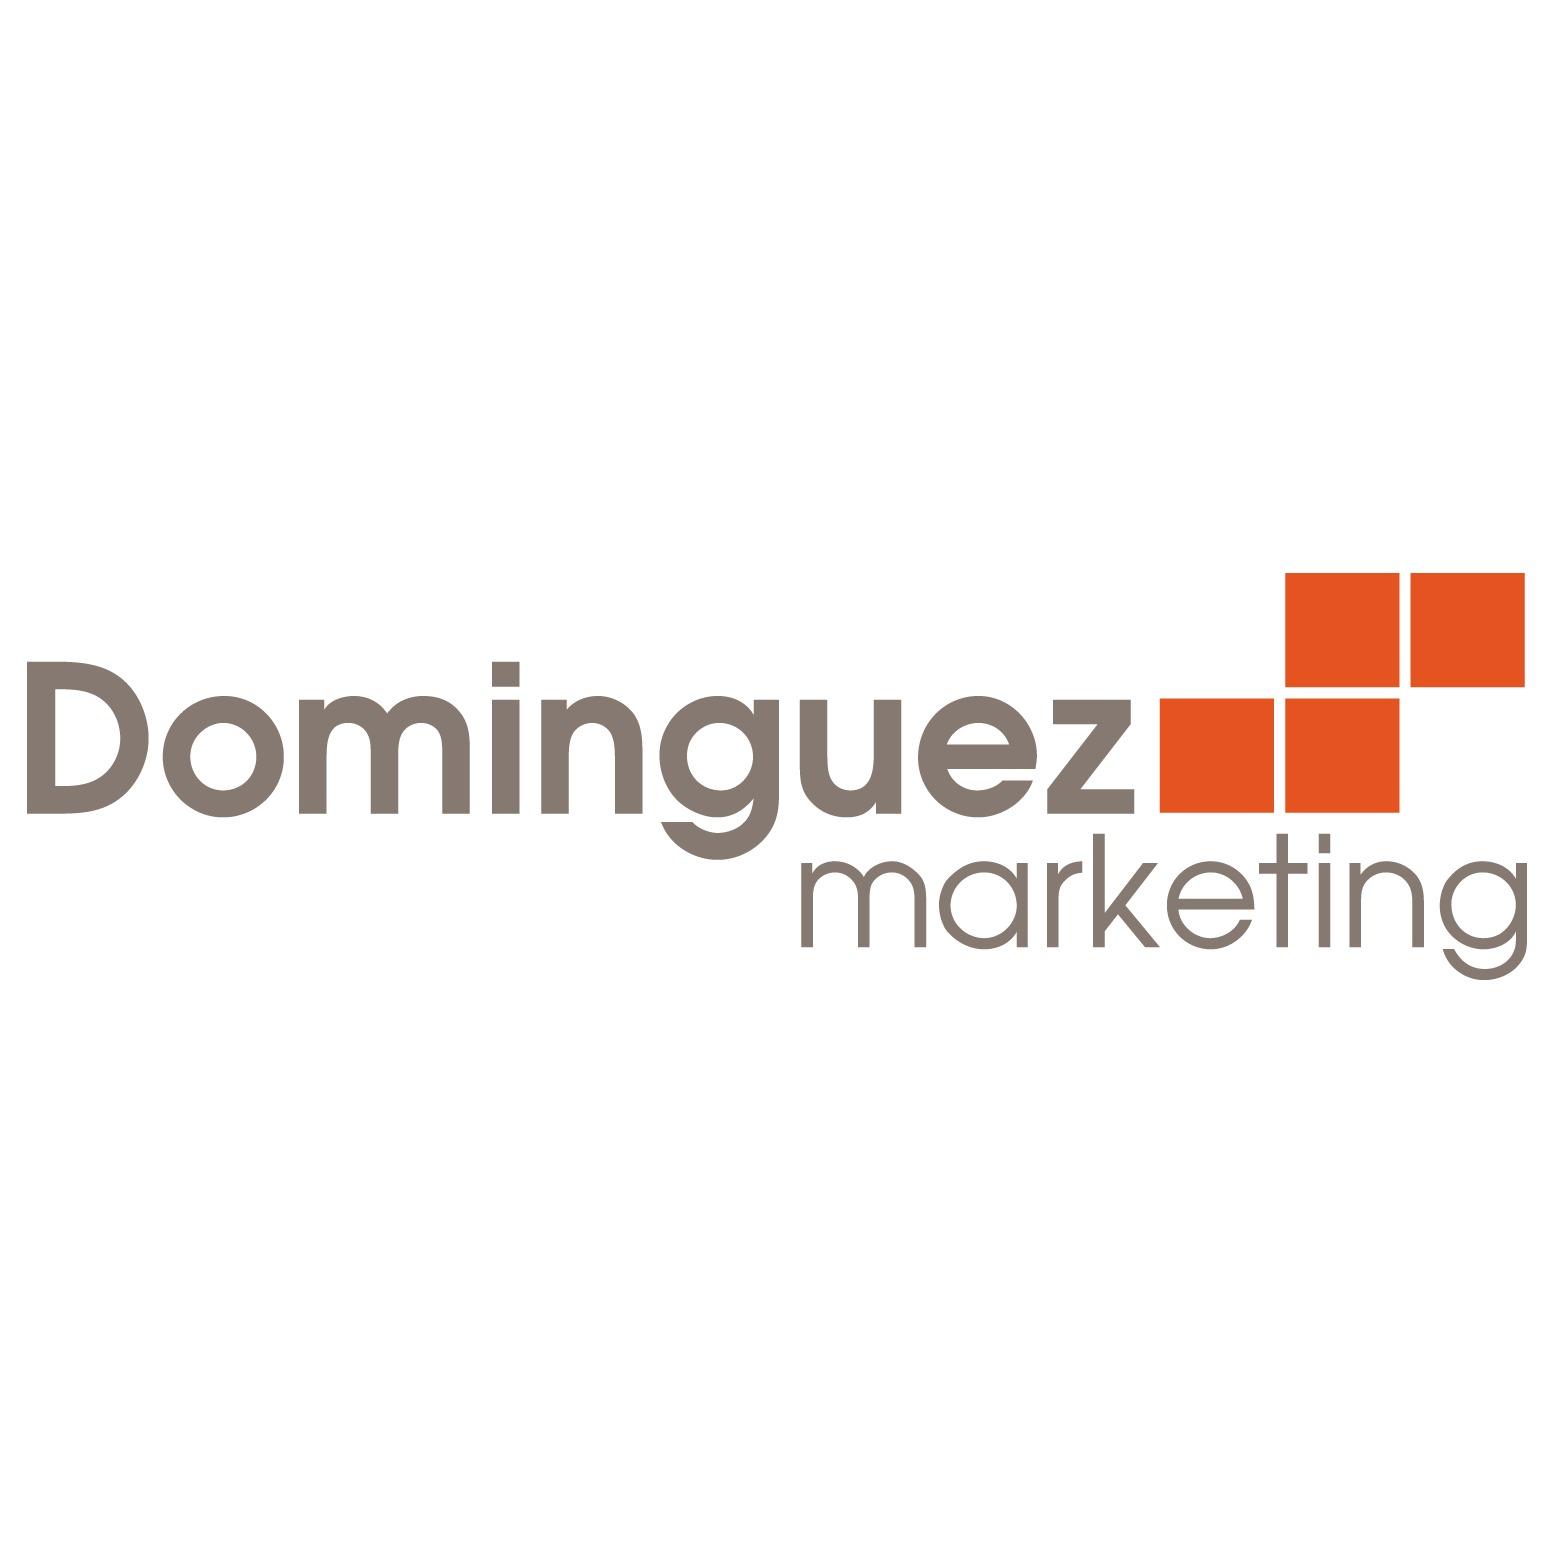 Dominguez Marketing - Buffalo, NY 14217 - (716)919-6584 | ShowMeLocal.com